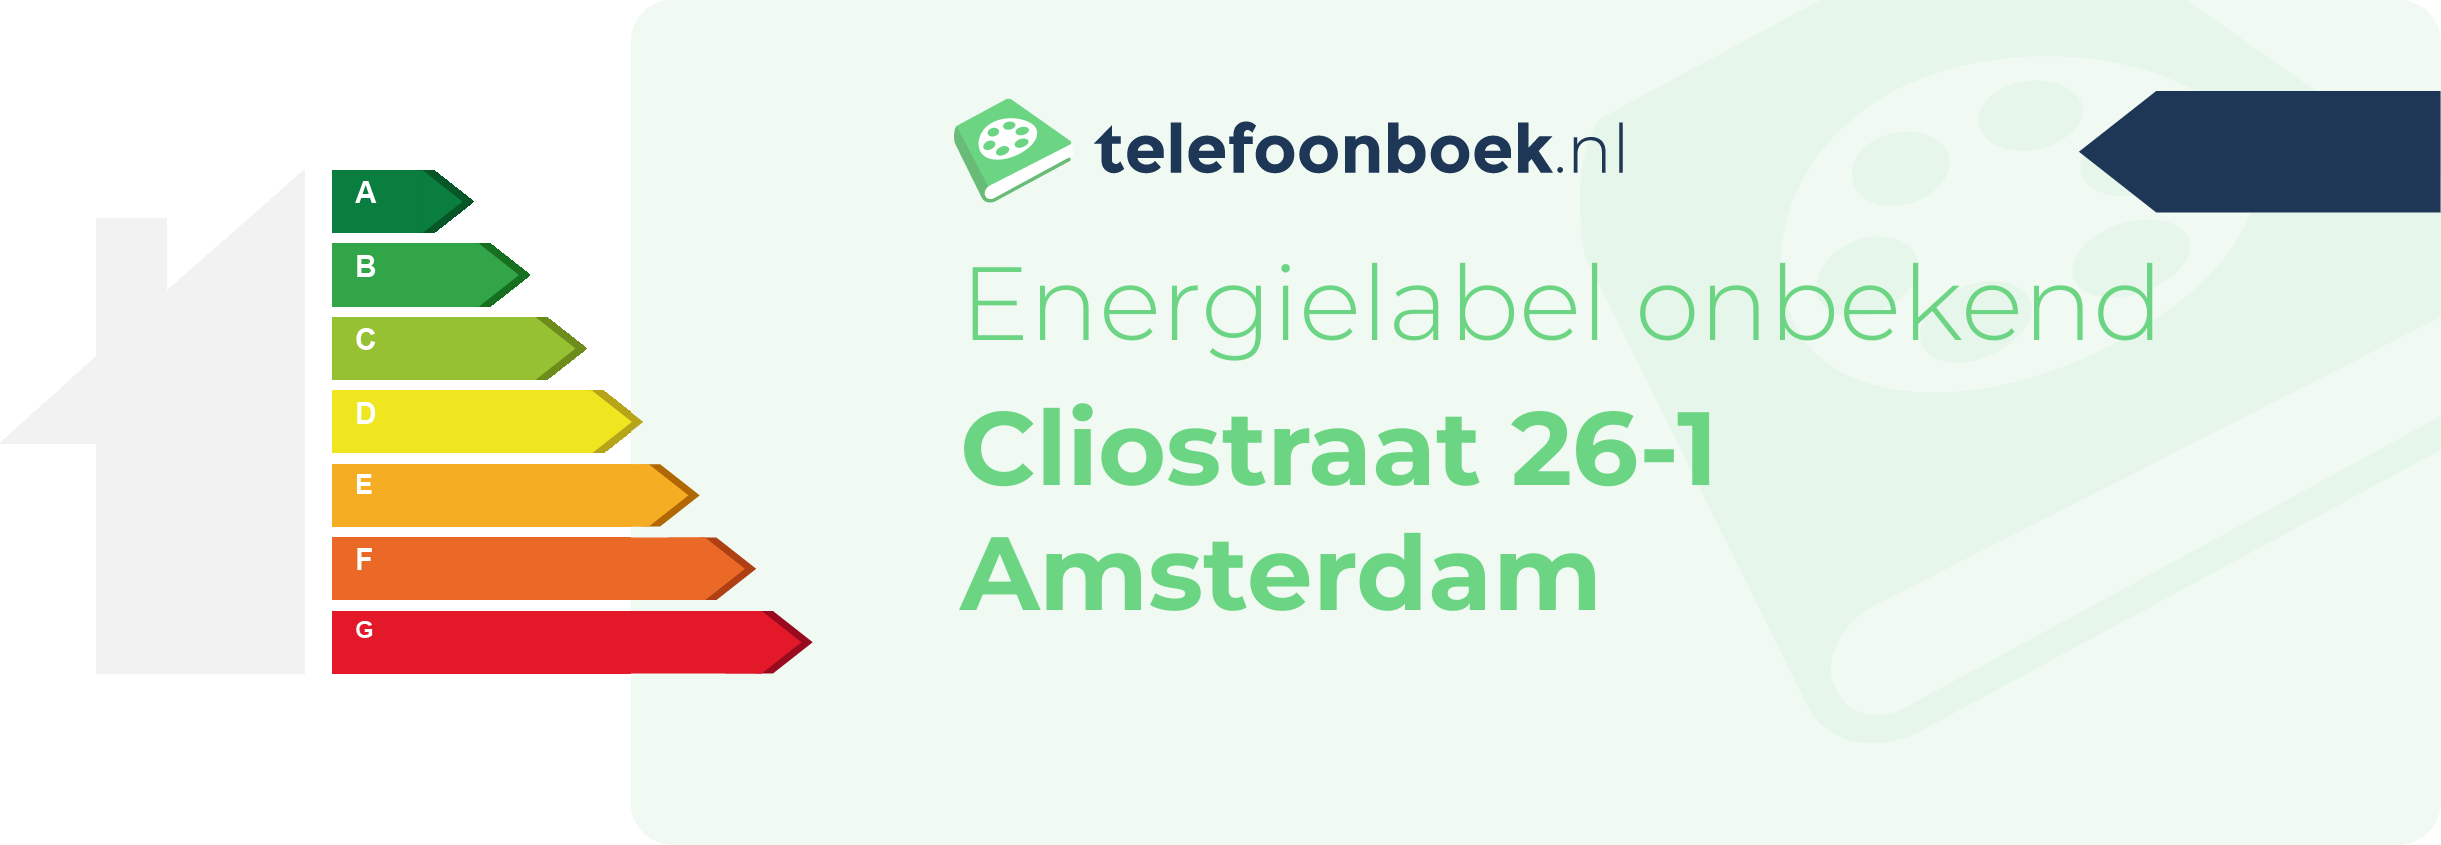 Energielabel Cliostraat 26-1 Amsterdam